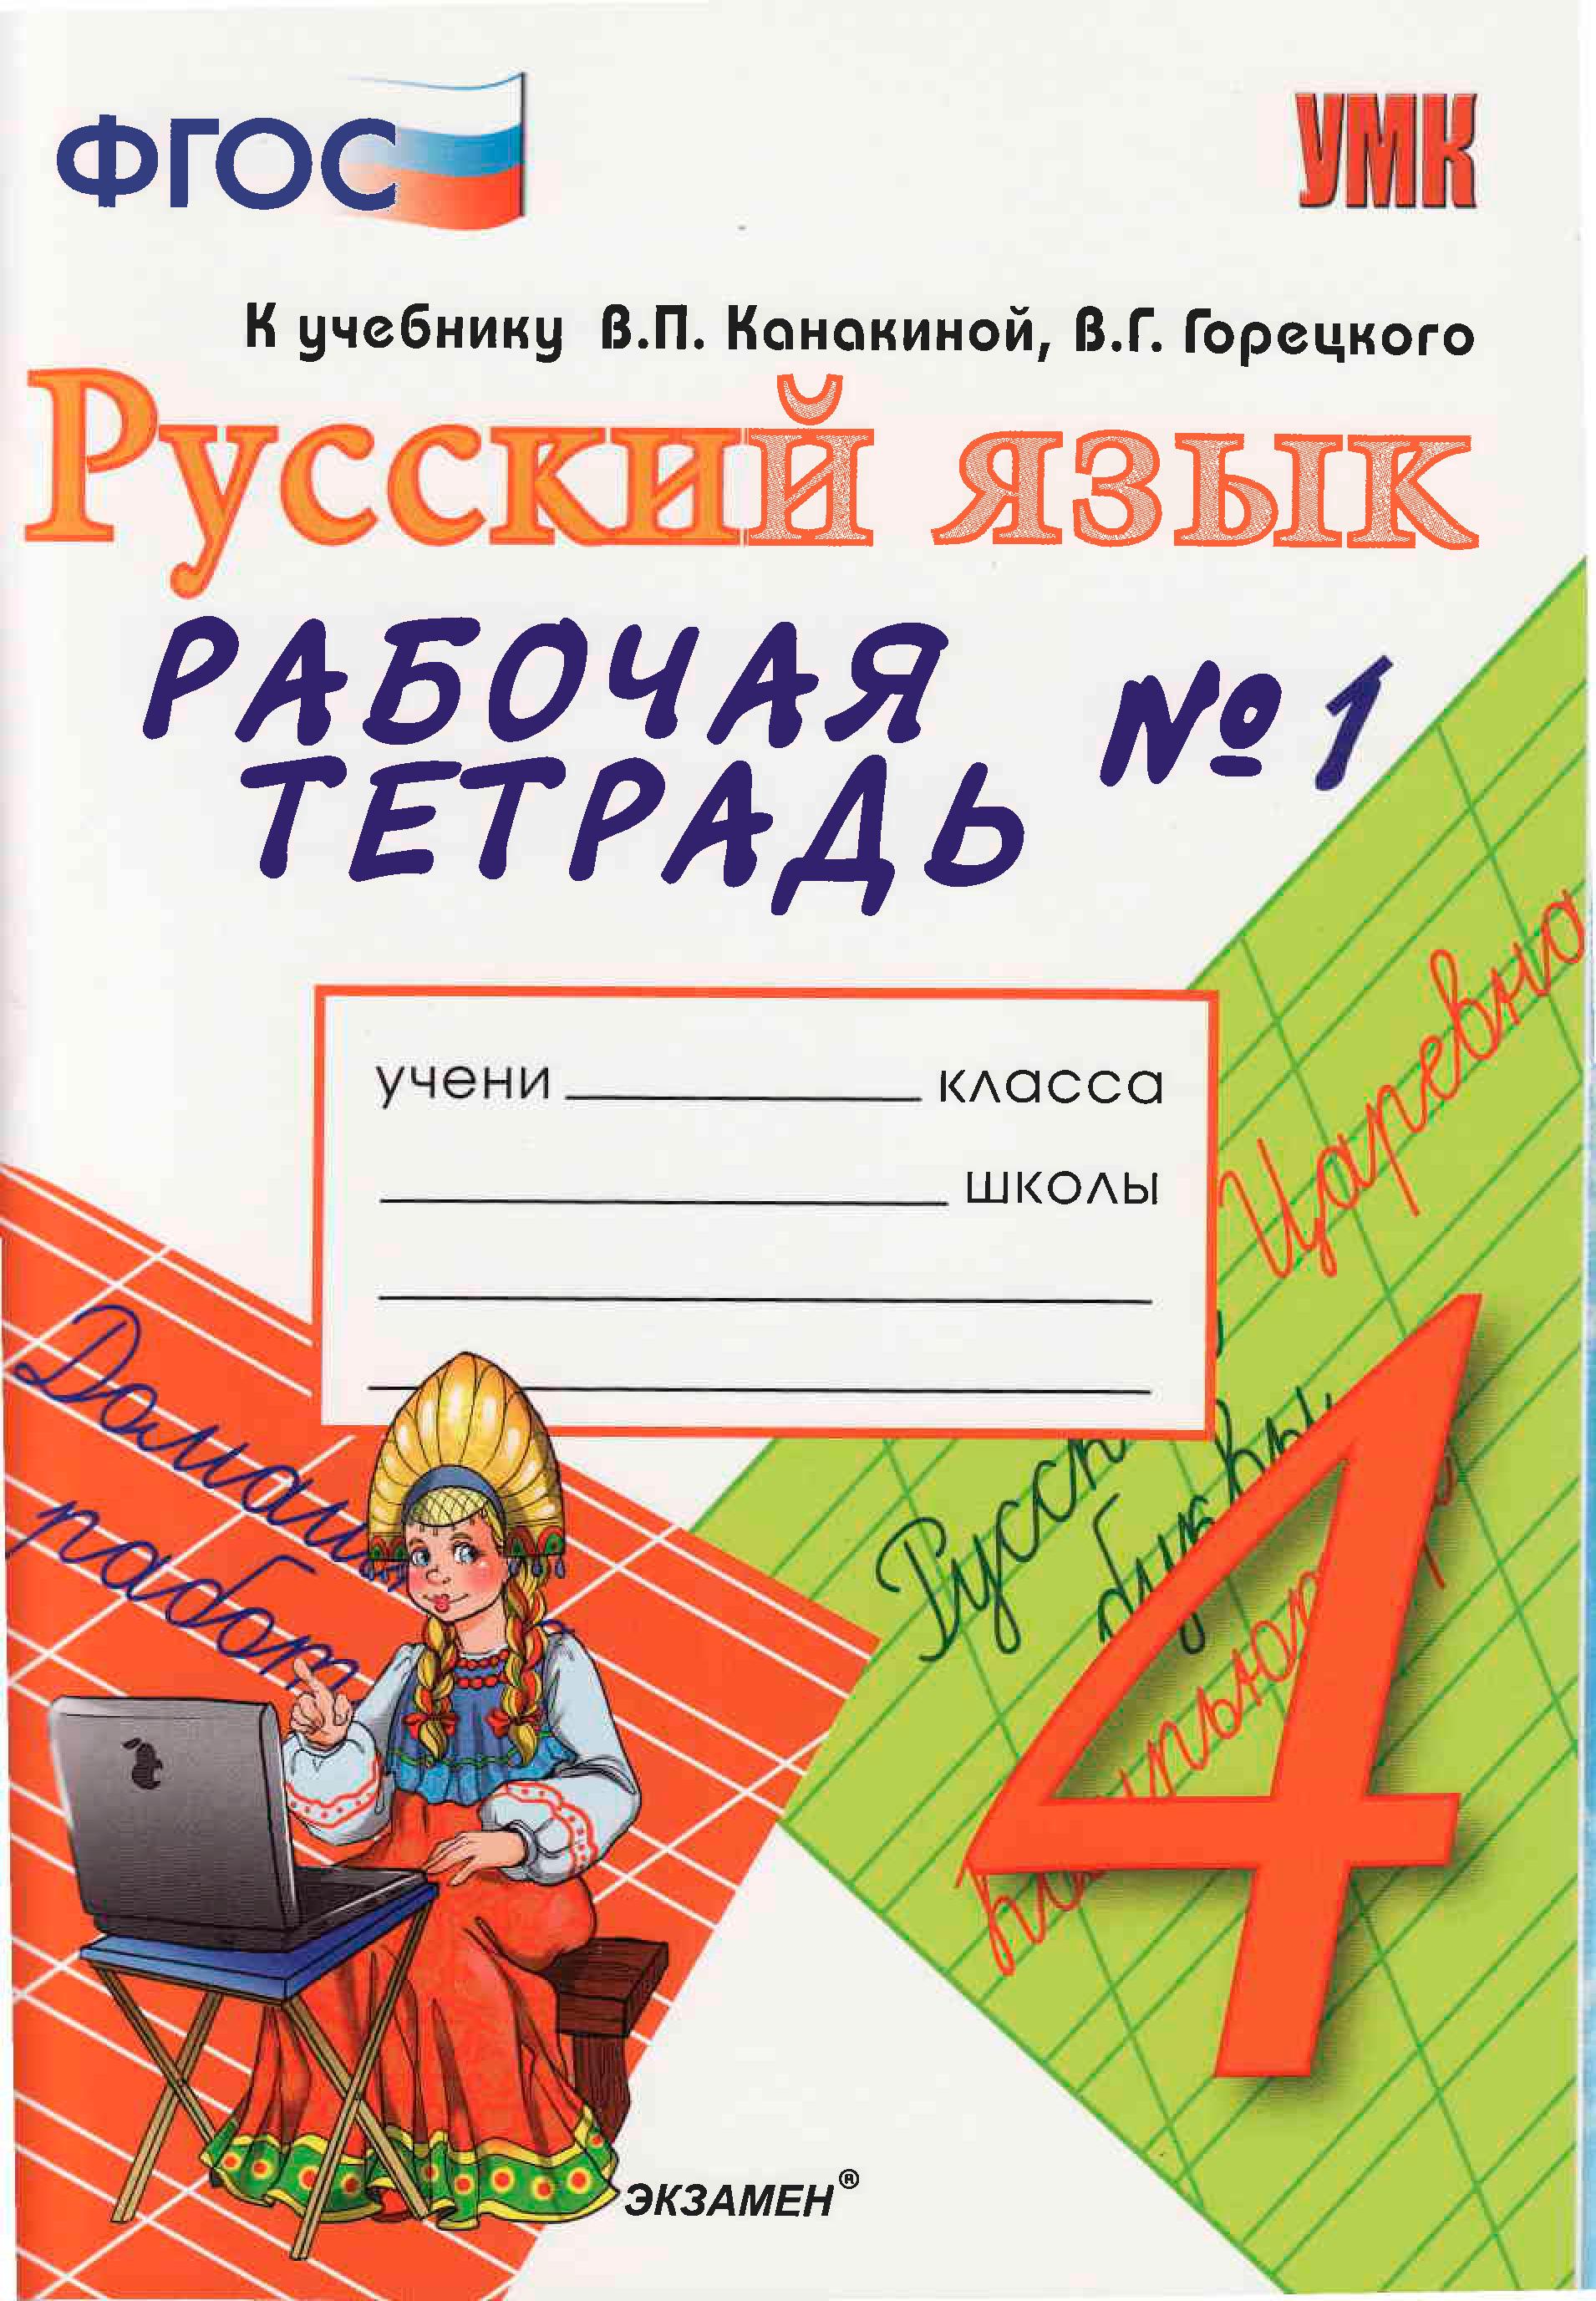 Русский язык 4 класс Тихомирова